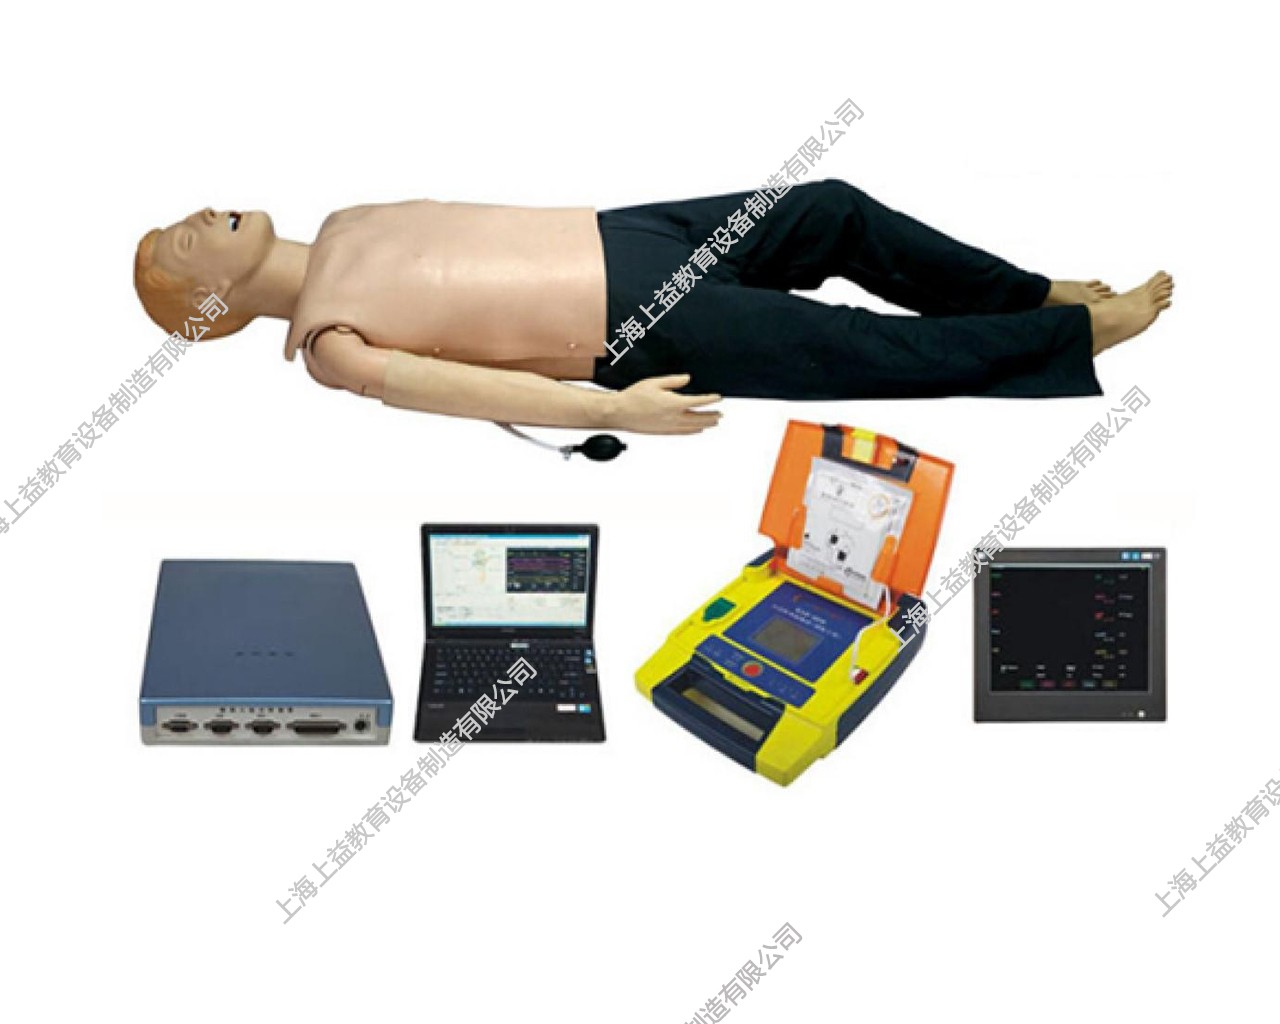 EM9108	高智能數字化綜合急救技能訓練系統（ACLS高級生命支持、計算機軟件控制）